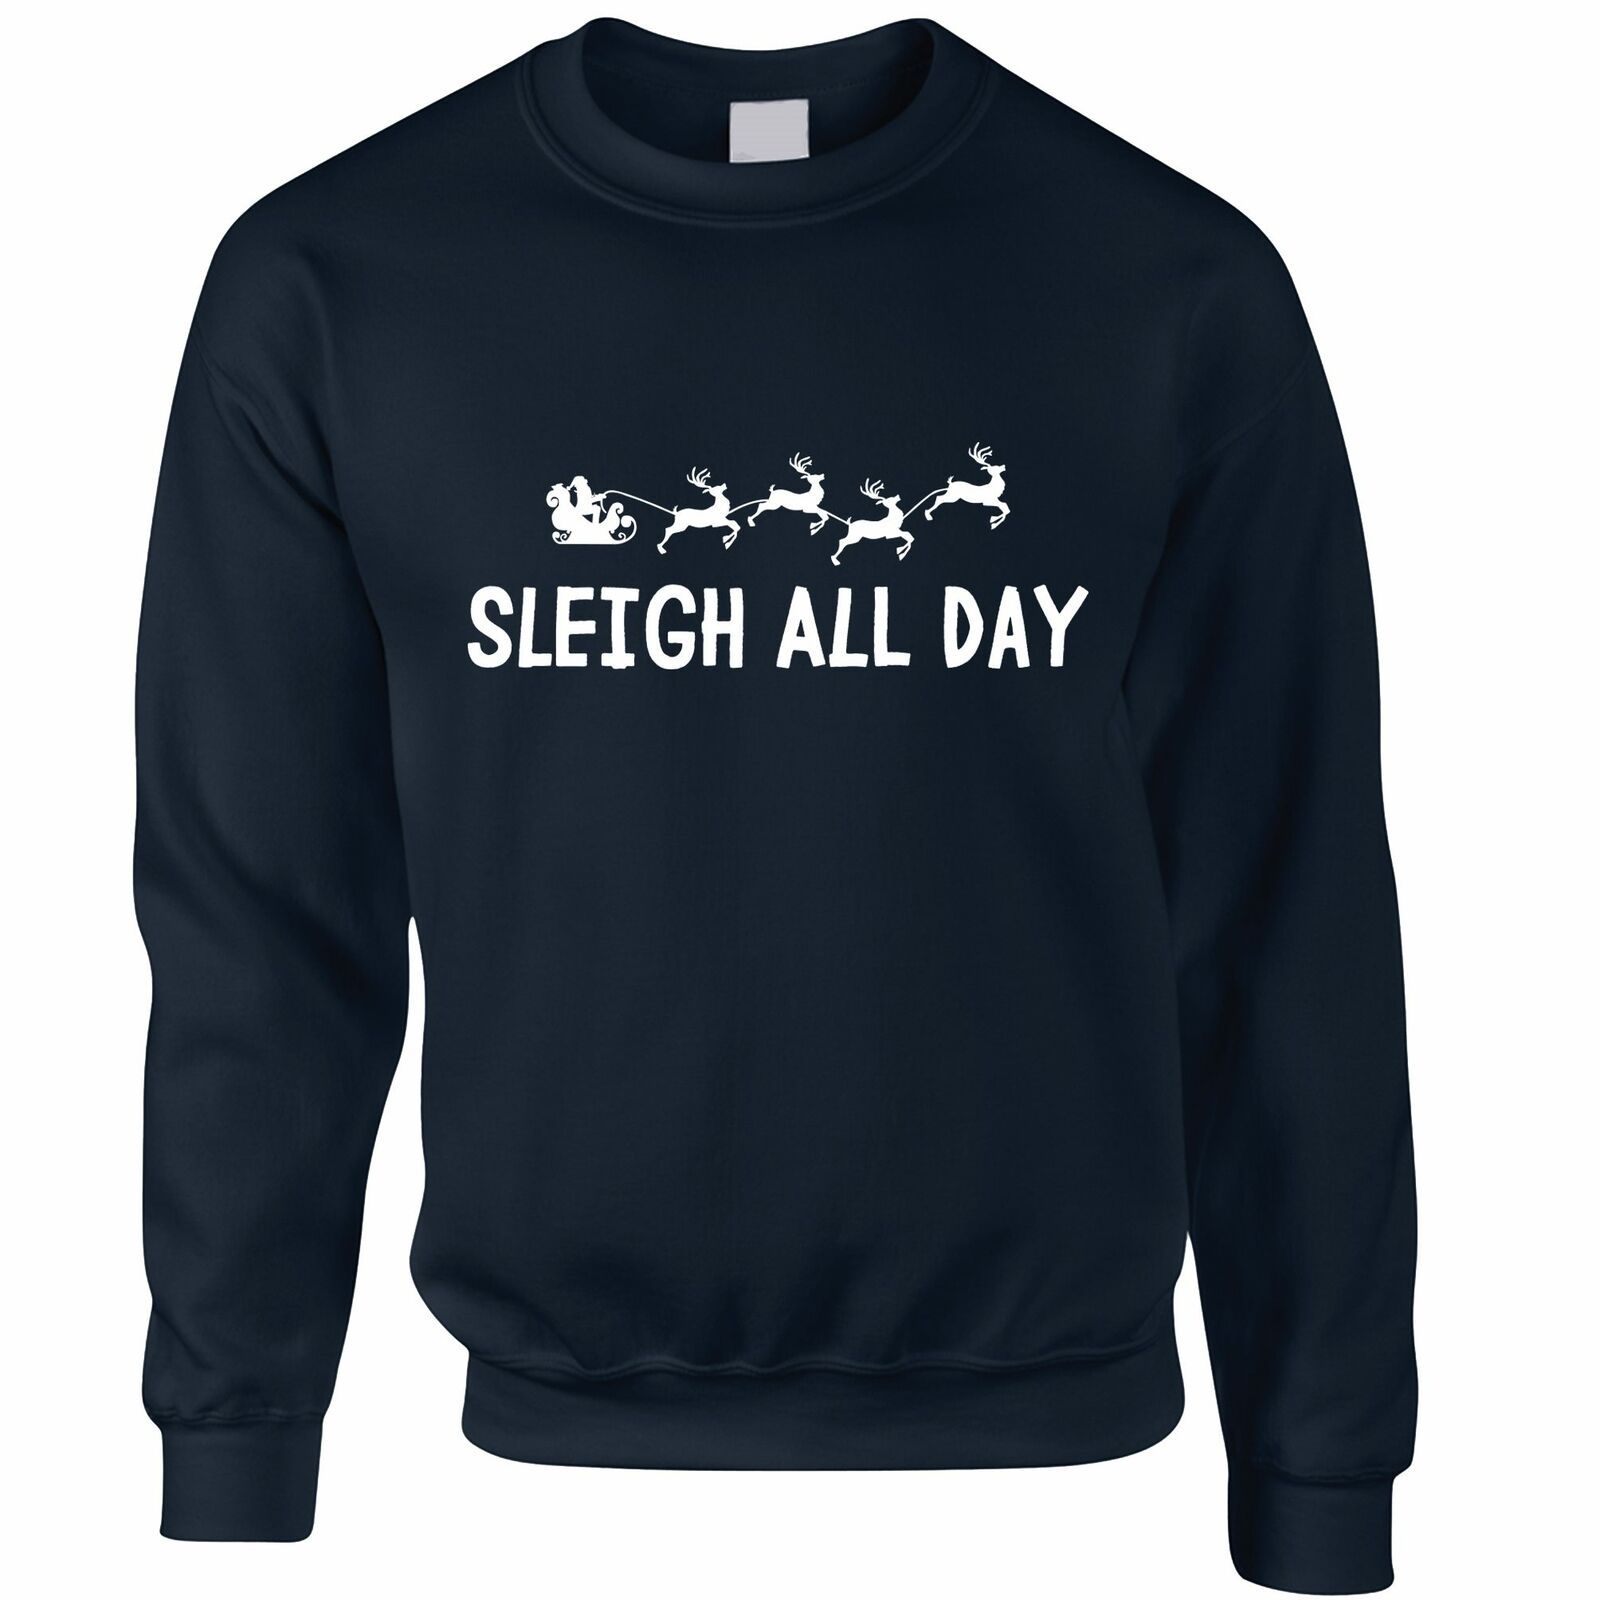 Sleigh All Day Christmas Sweatshirt Style: Sweatshirt, Color: Navy